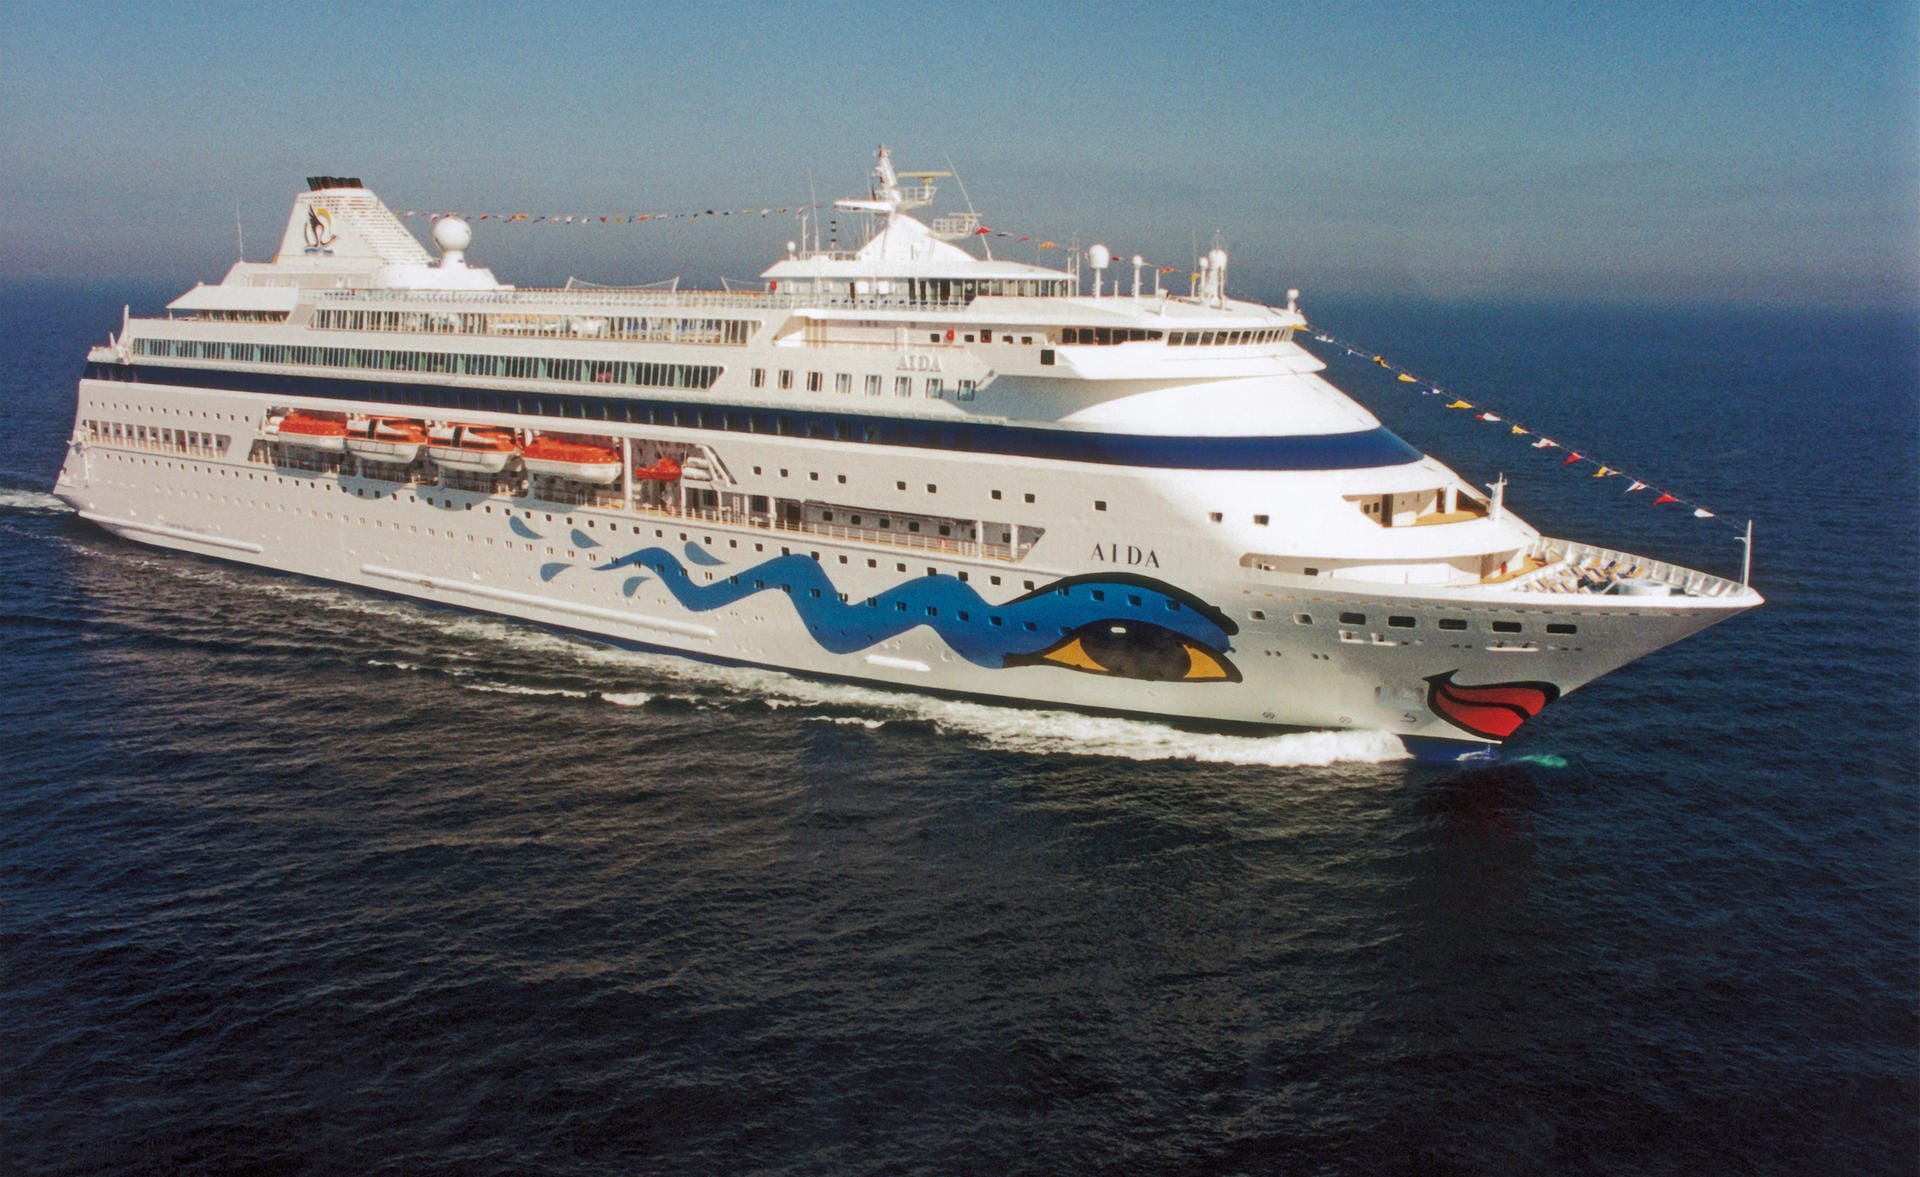 Beginn einer neuen Kreuzfahrtepoche in Deutschland: 1996 wurde das erste Aida-Schiff in Dienst gestellt. Anfangs hieß das Schiff nur "Aida", heute fährt sie als "Aida Cara". Das "Clubschiff" sollte der Kreuzfahrt ein lockereres Image verleihen.